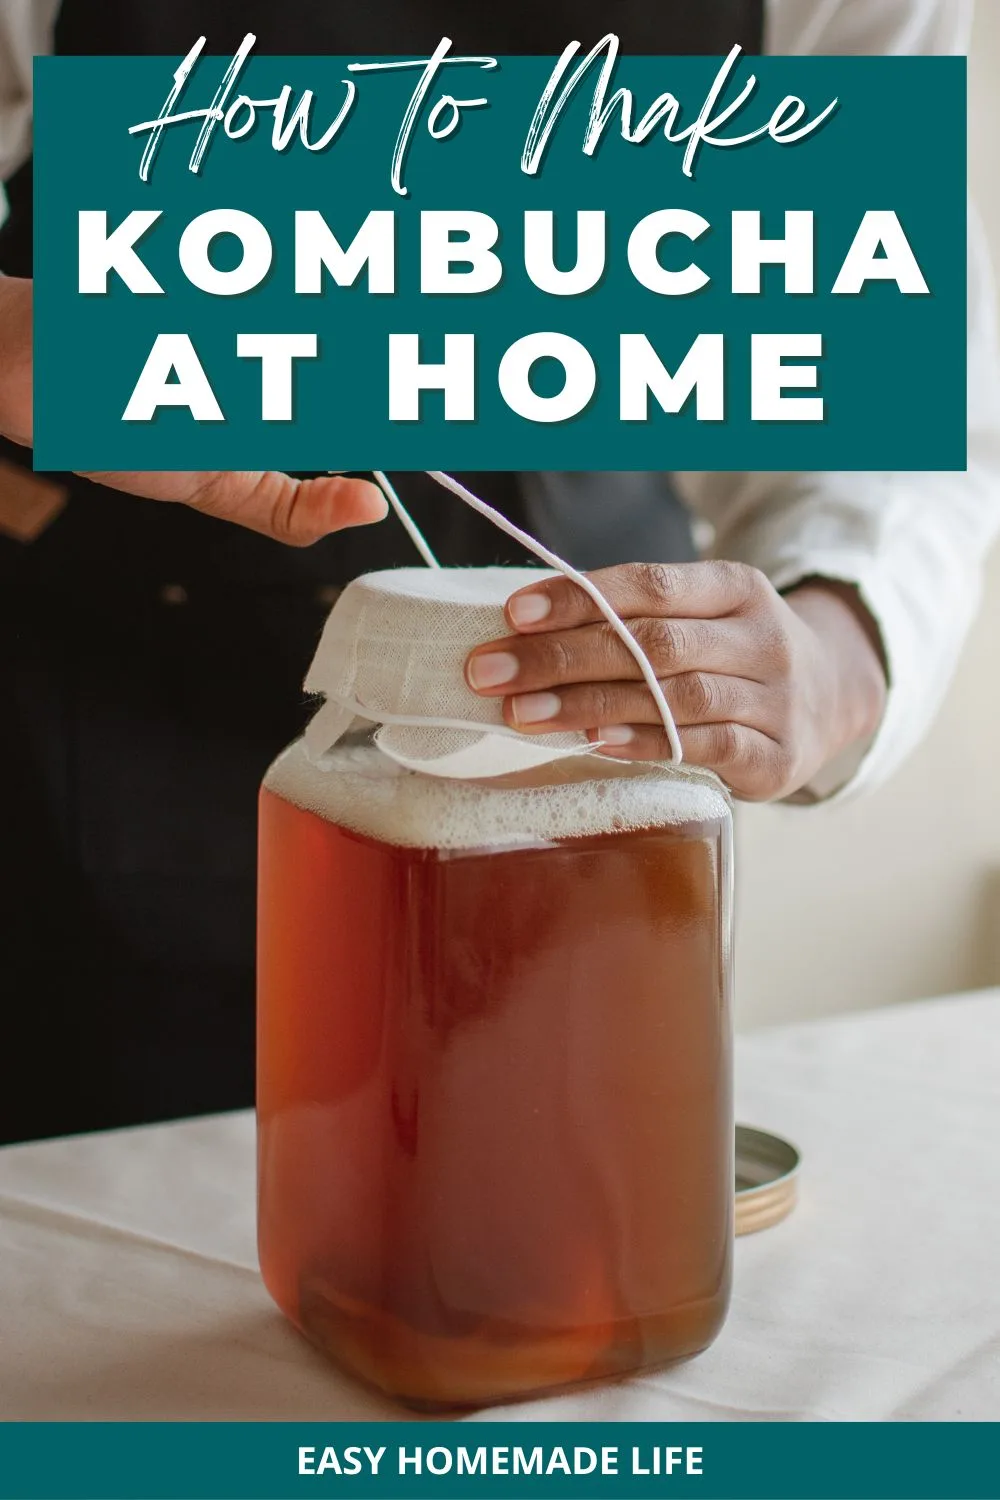 How to make kombucha at home.